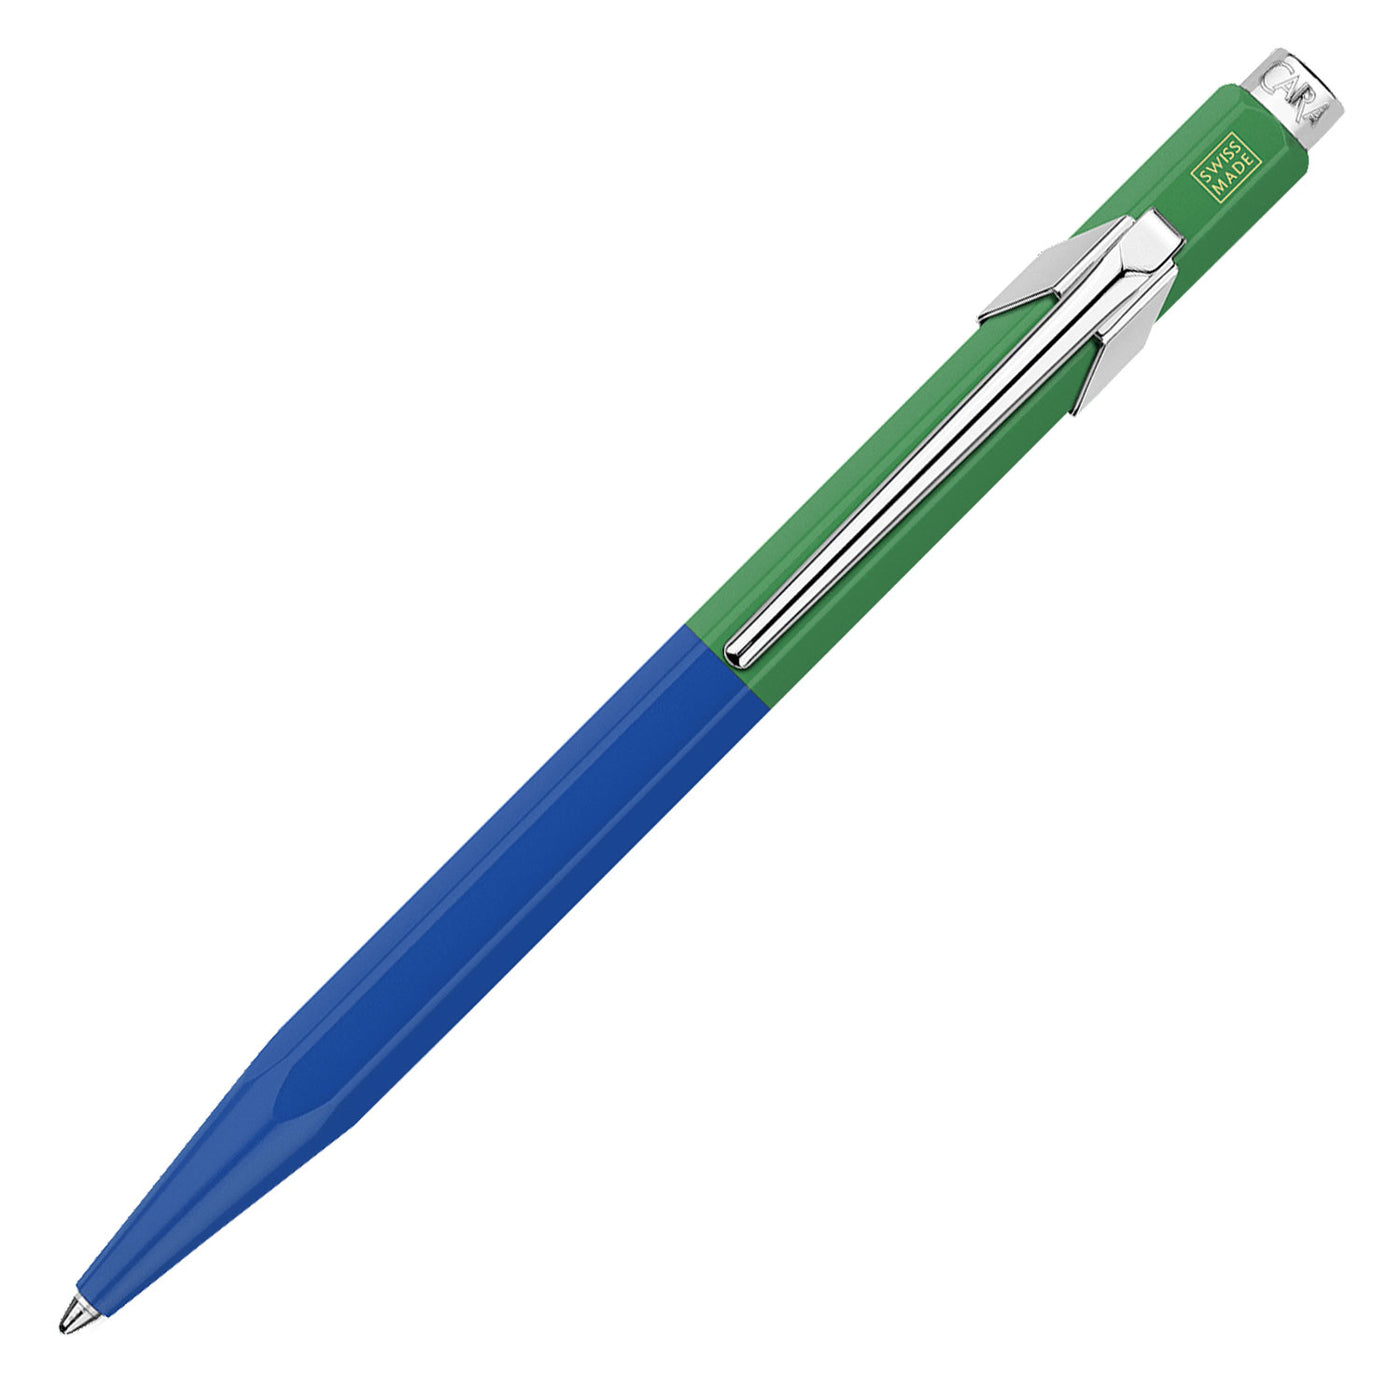 Caran d'Ache 849 Paul Smith Ball Pen - Cobalt Blue & Emerald Green (Limited Edition) 1